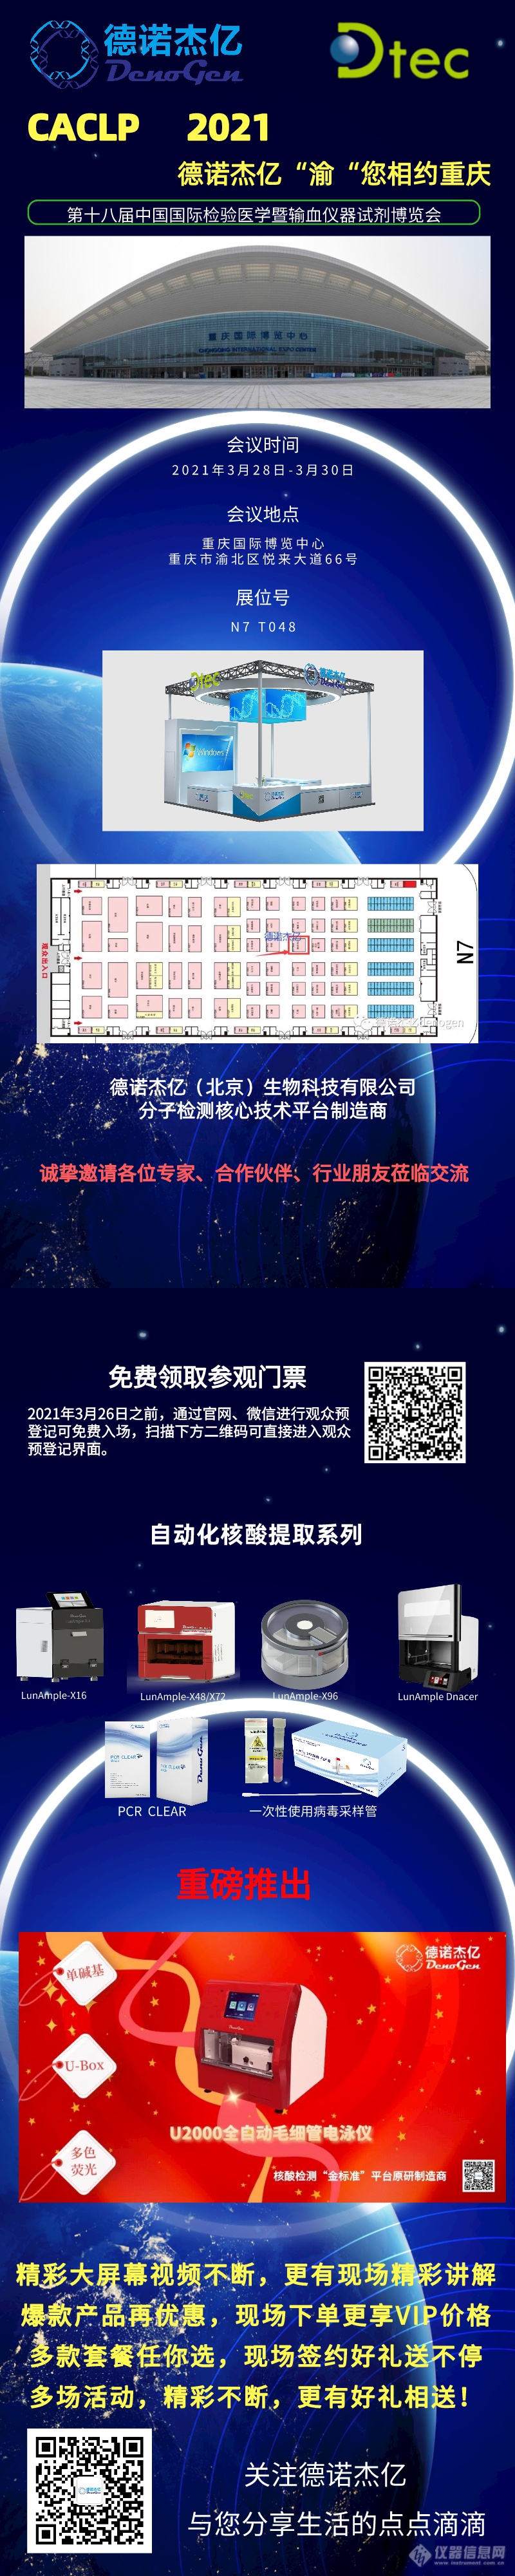 默认标题_长图海报_2021-03-22 (1).png